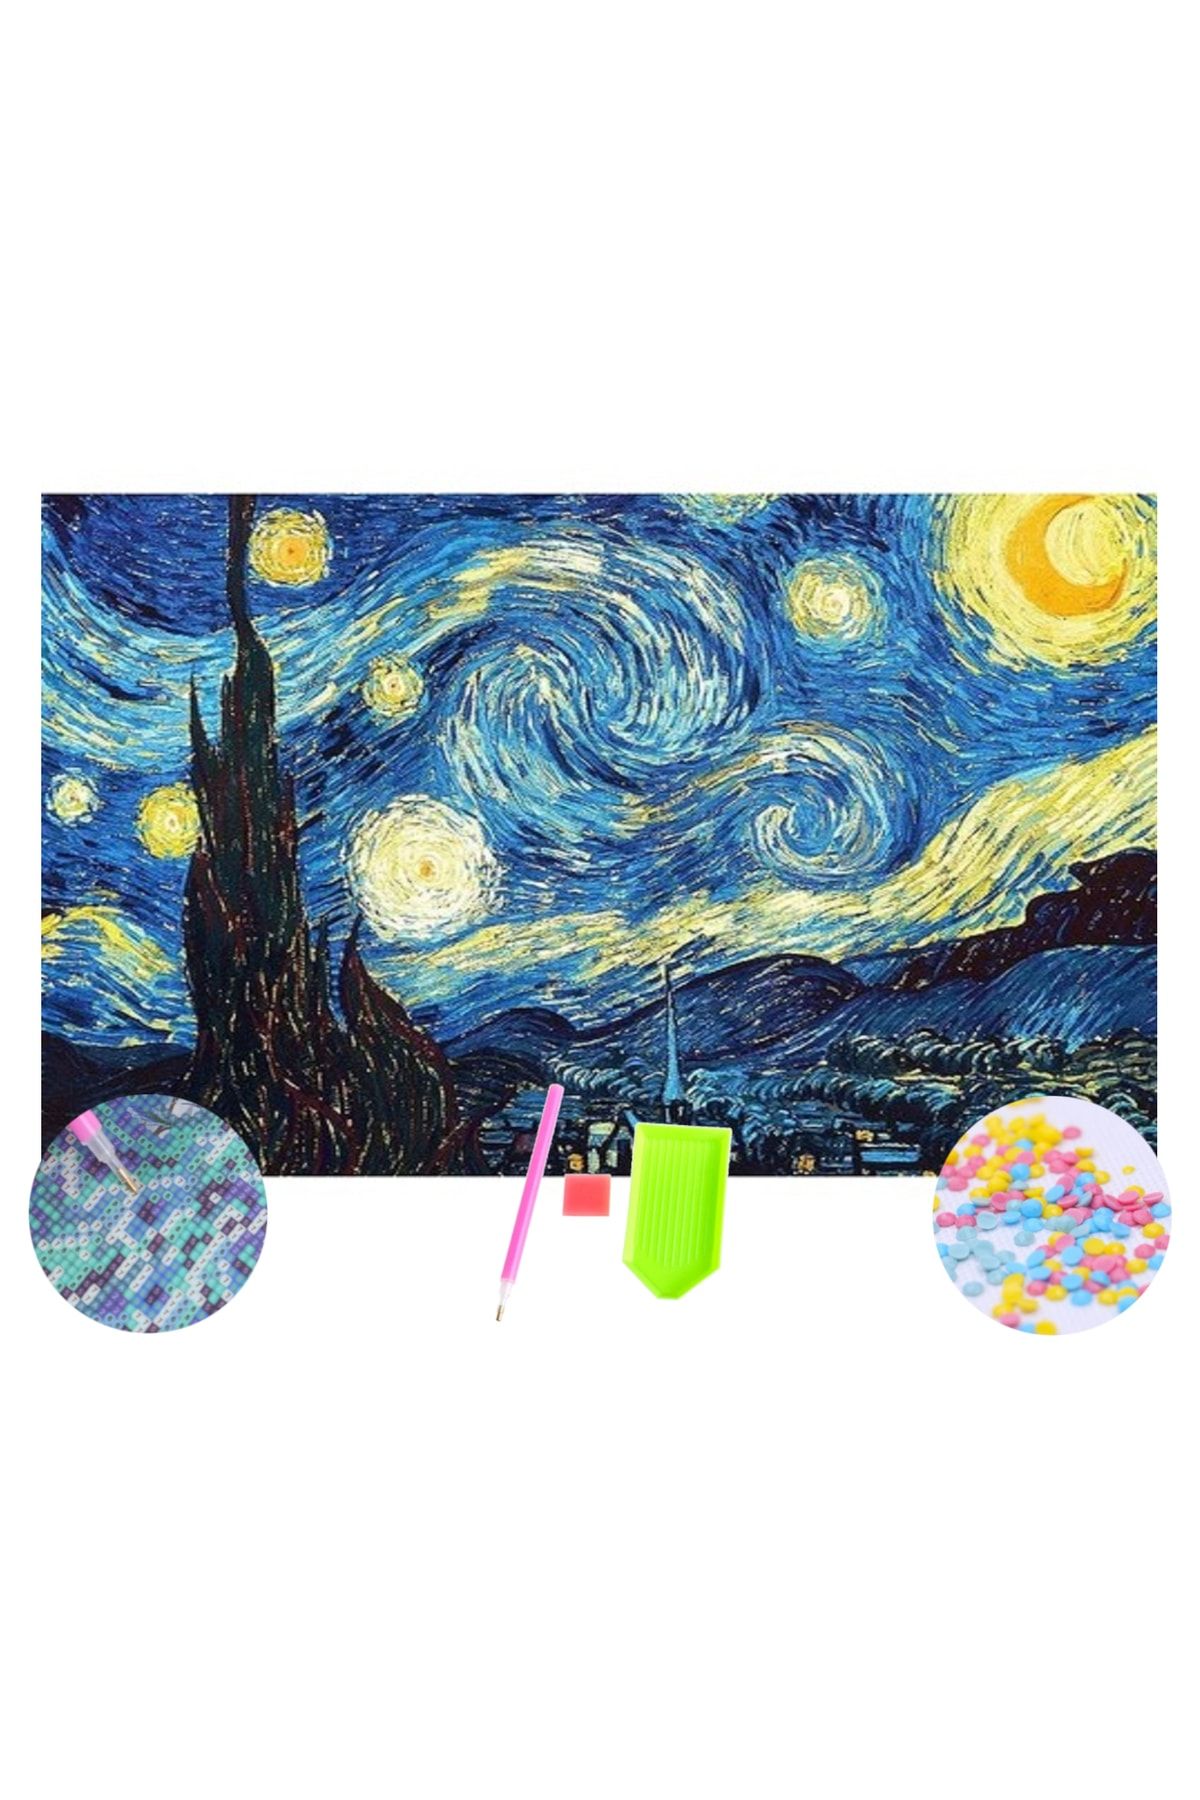 HONDEP 5d Elmas Boyama Mozaik Tablo 35x50 Cm Van Gogh Yıldızlı Gece Puzzle Tuval Seti